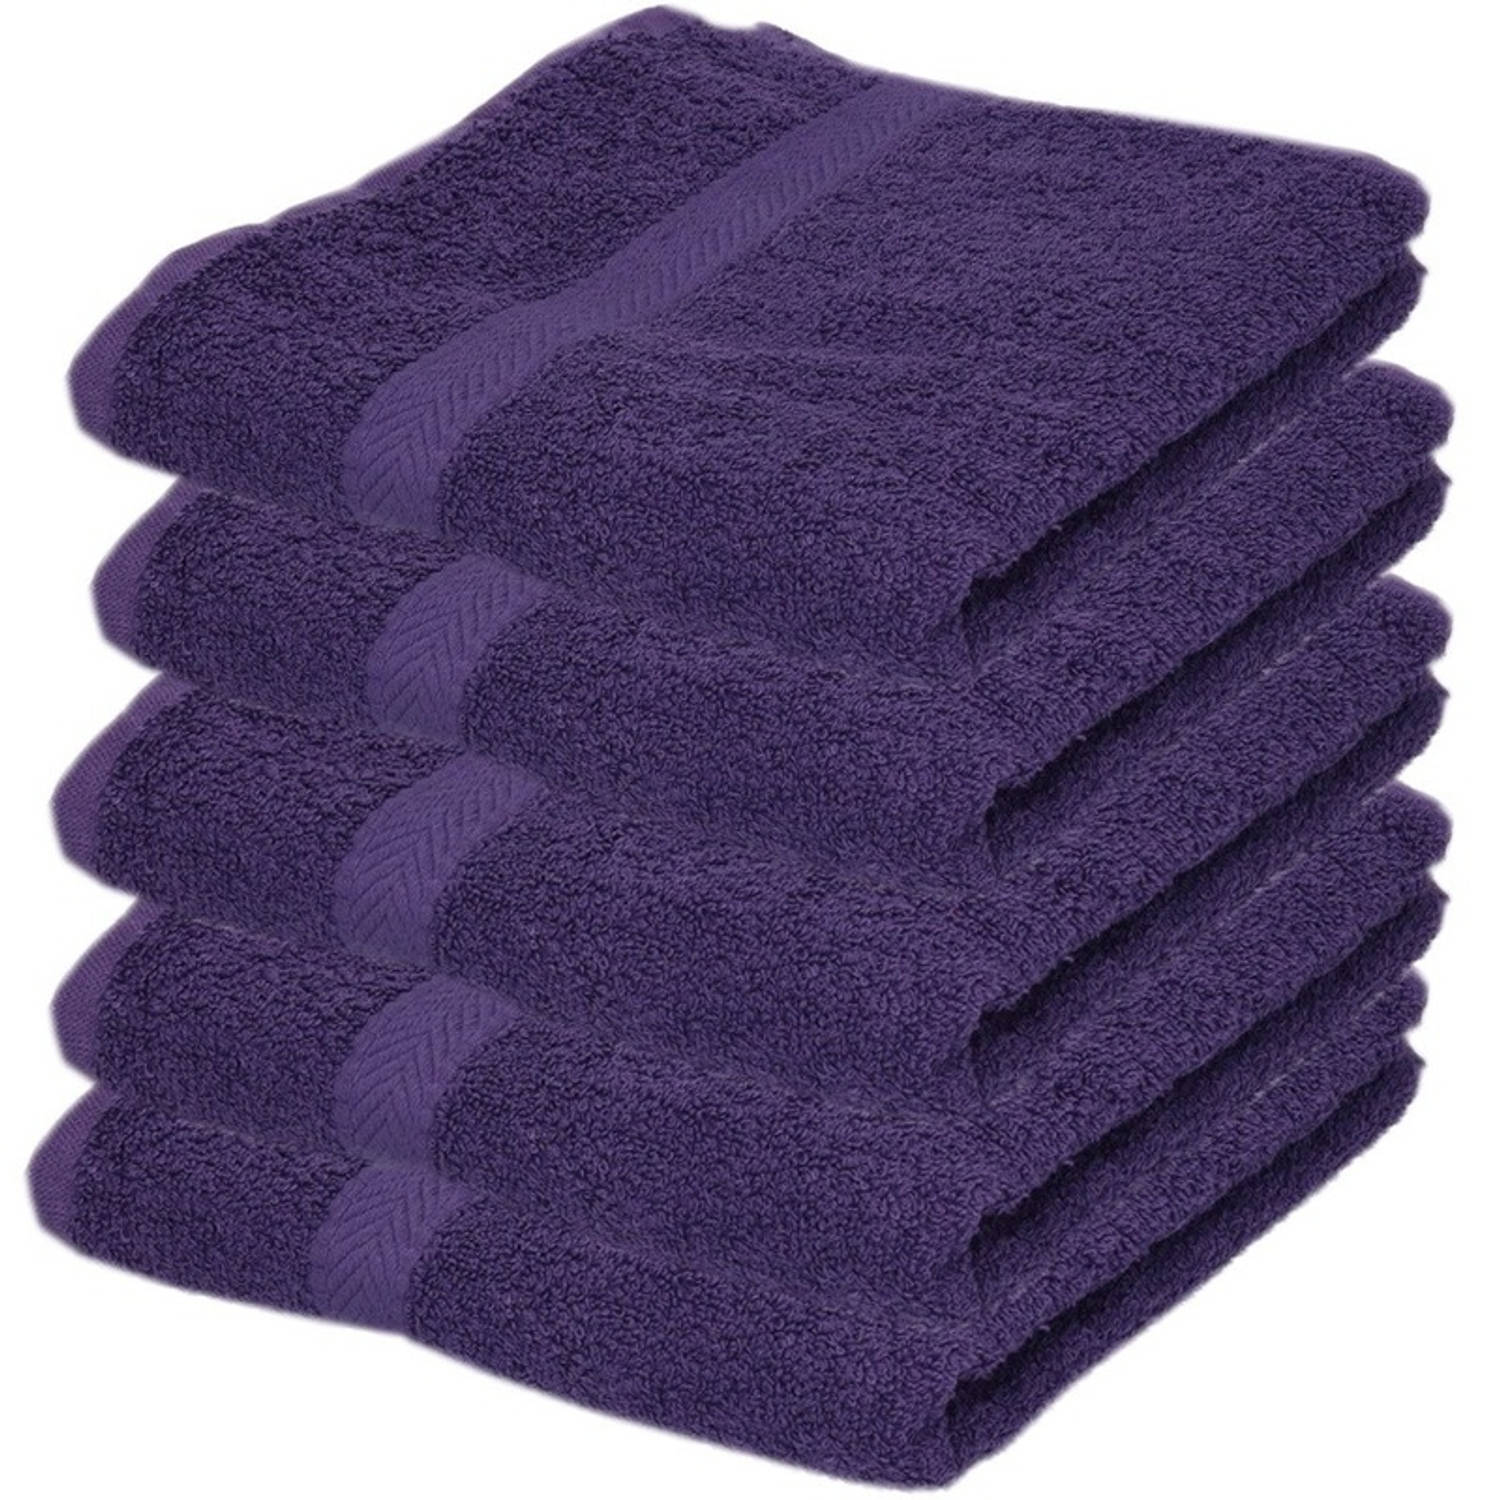 5x handdoeken paars 50 x 90 cm - Badhanddoek | Blokker